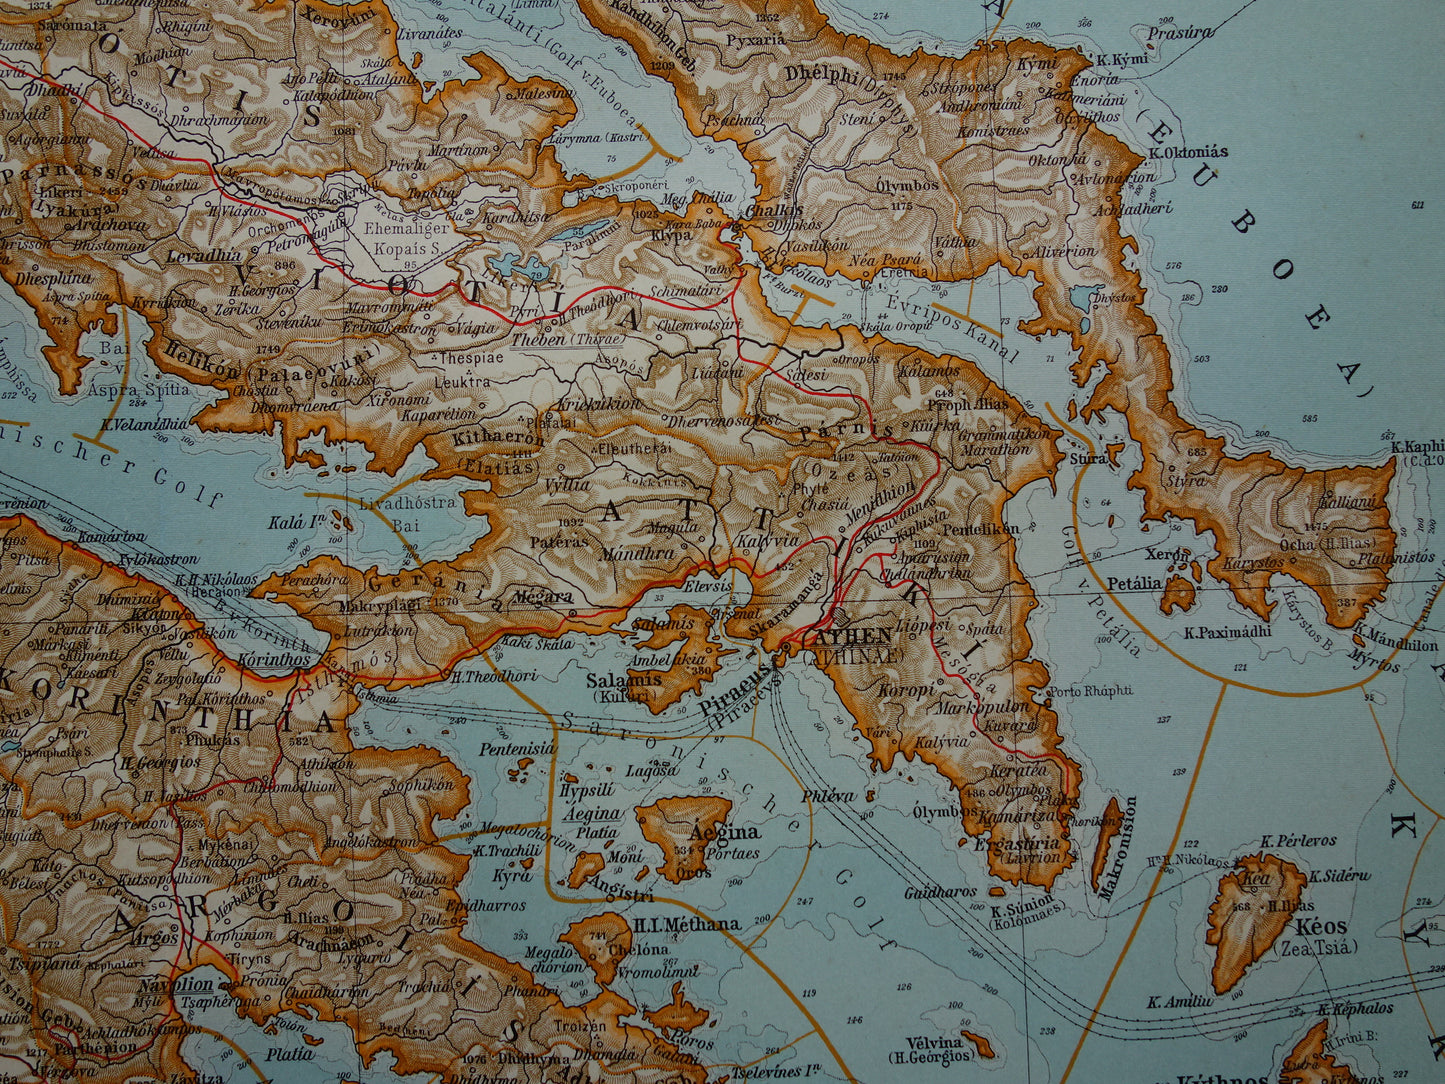 Oude landkaart van Griekenland uit 1910 originele antieke historische kaart Athene